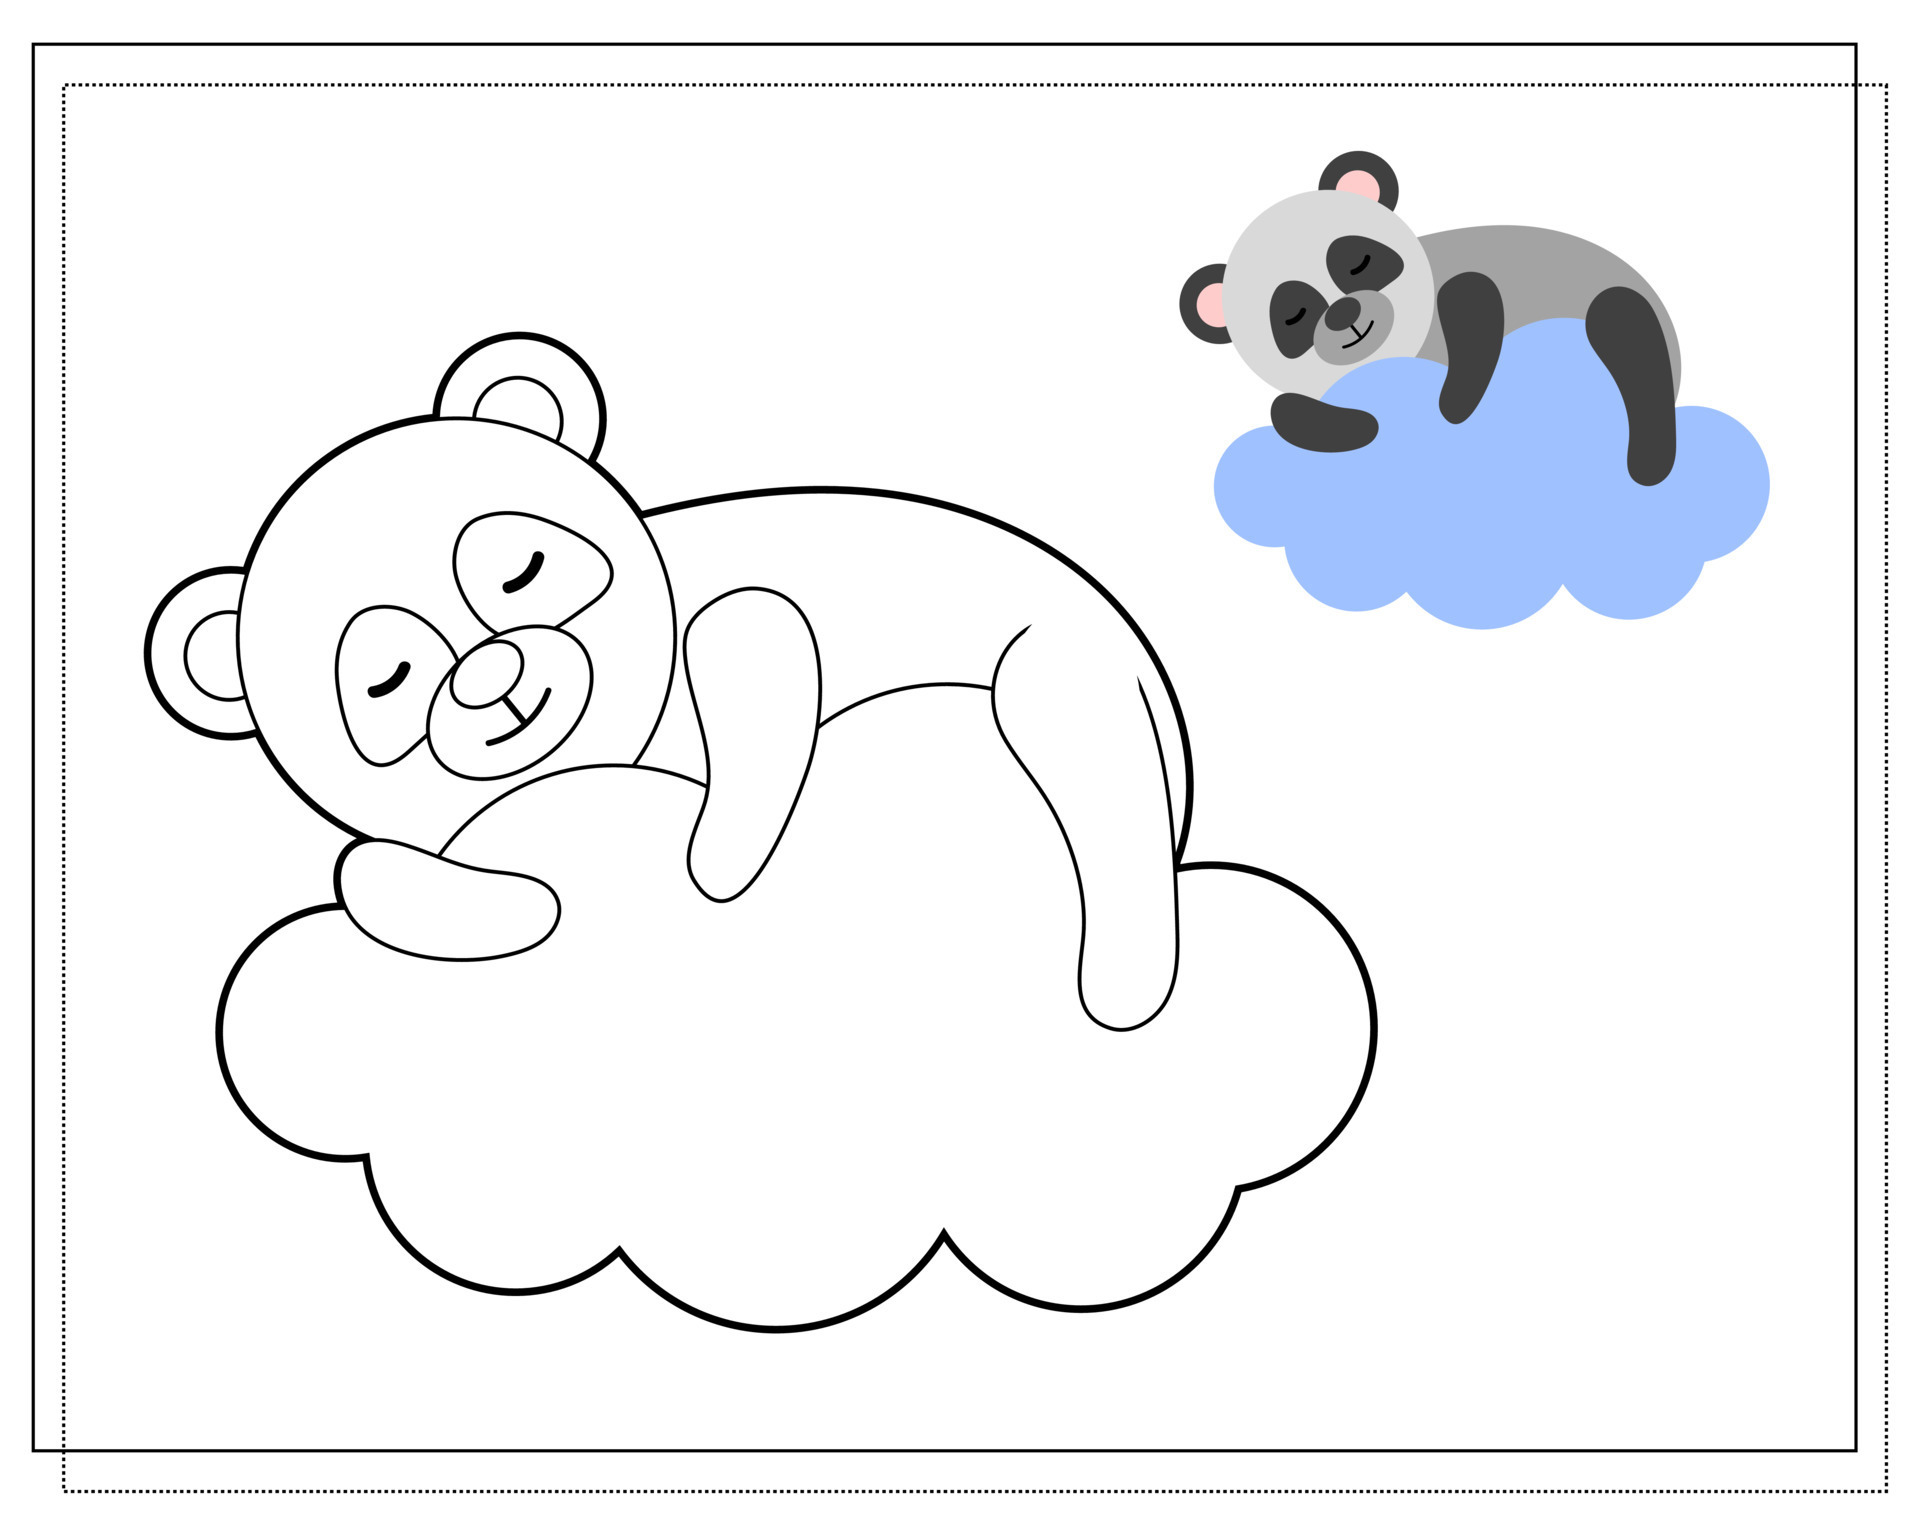 Livro de colorir infantil panda fofo estilo de desenho realista linhas  livres nada fundo branco